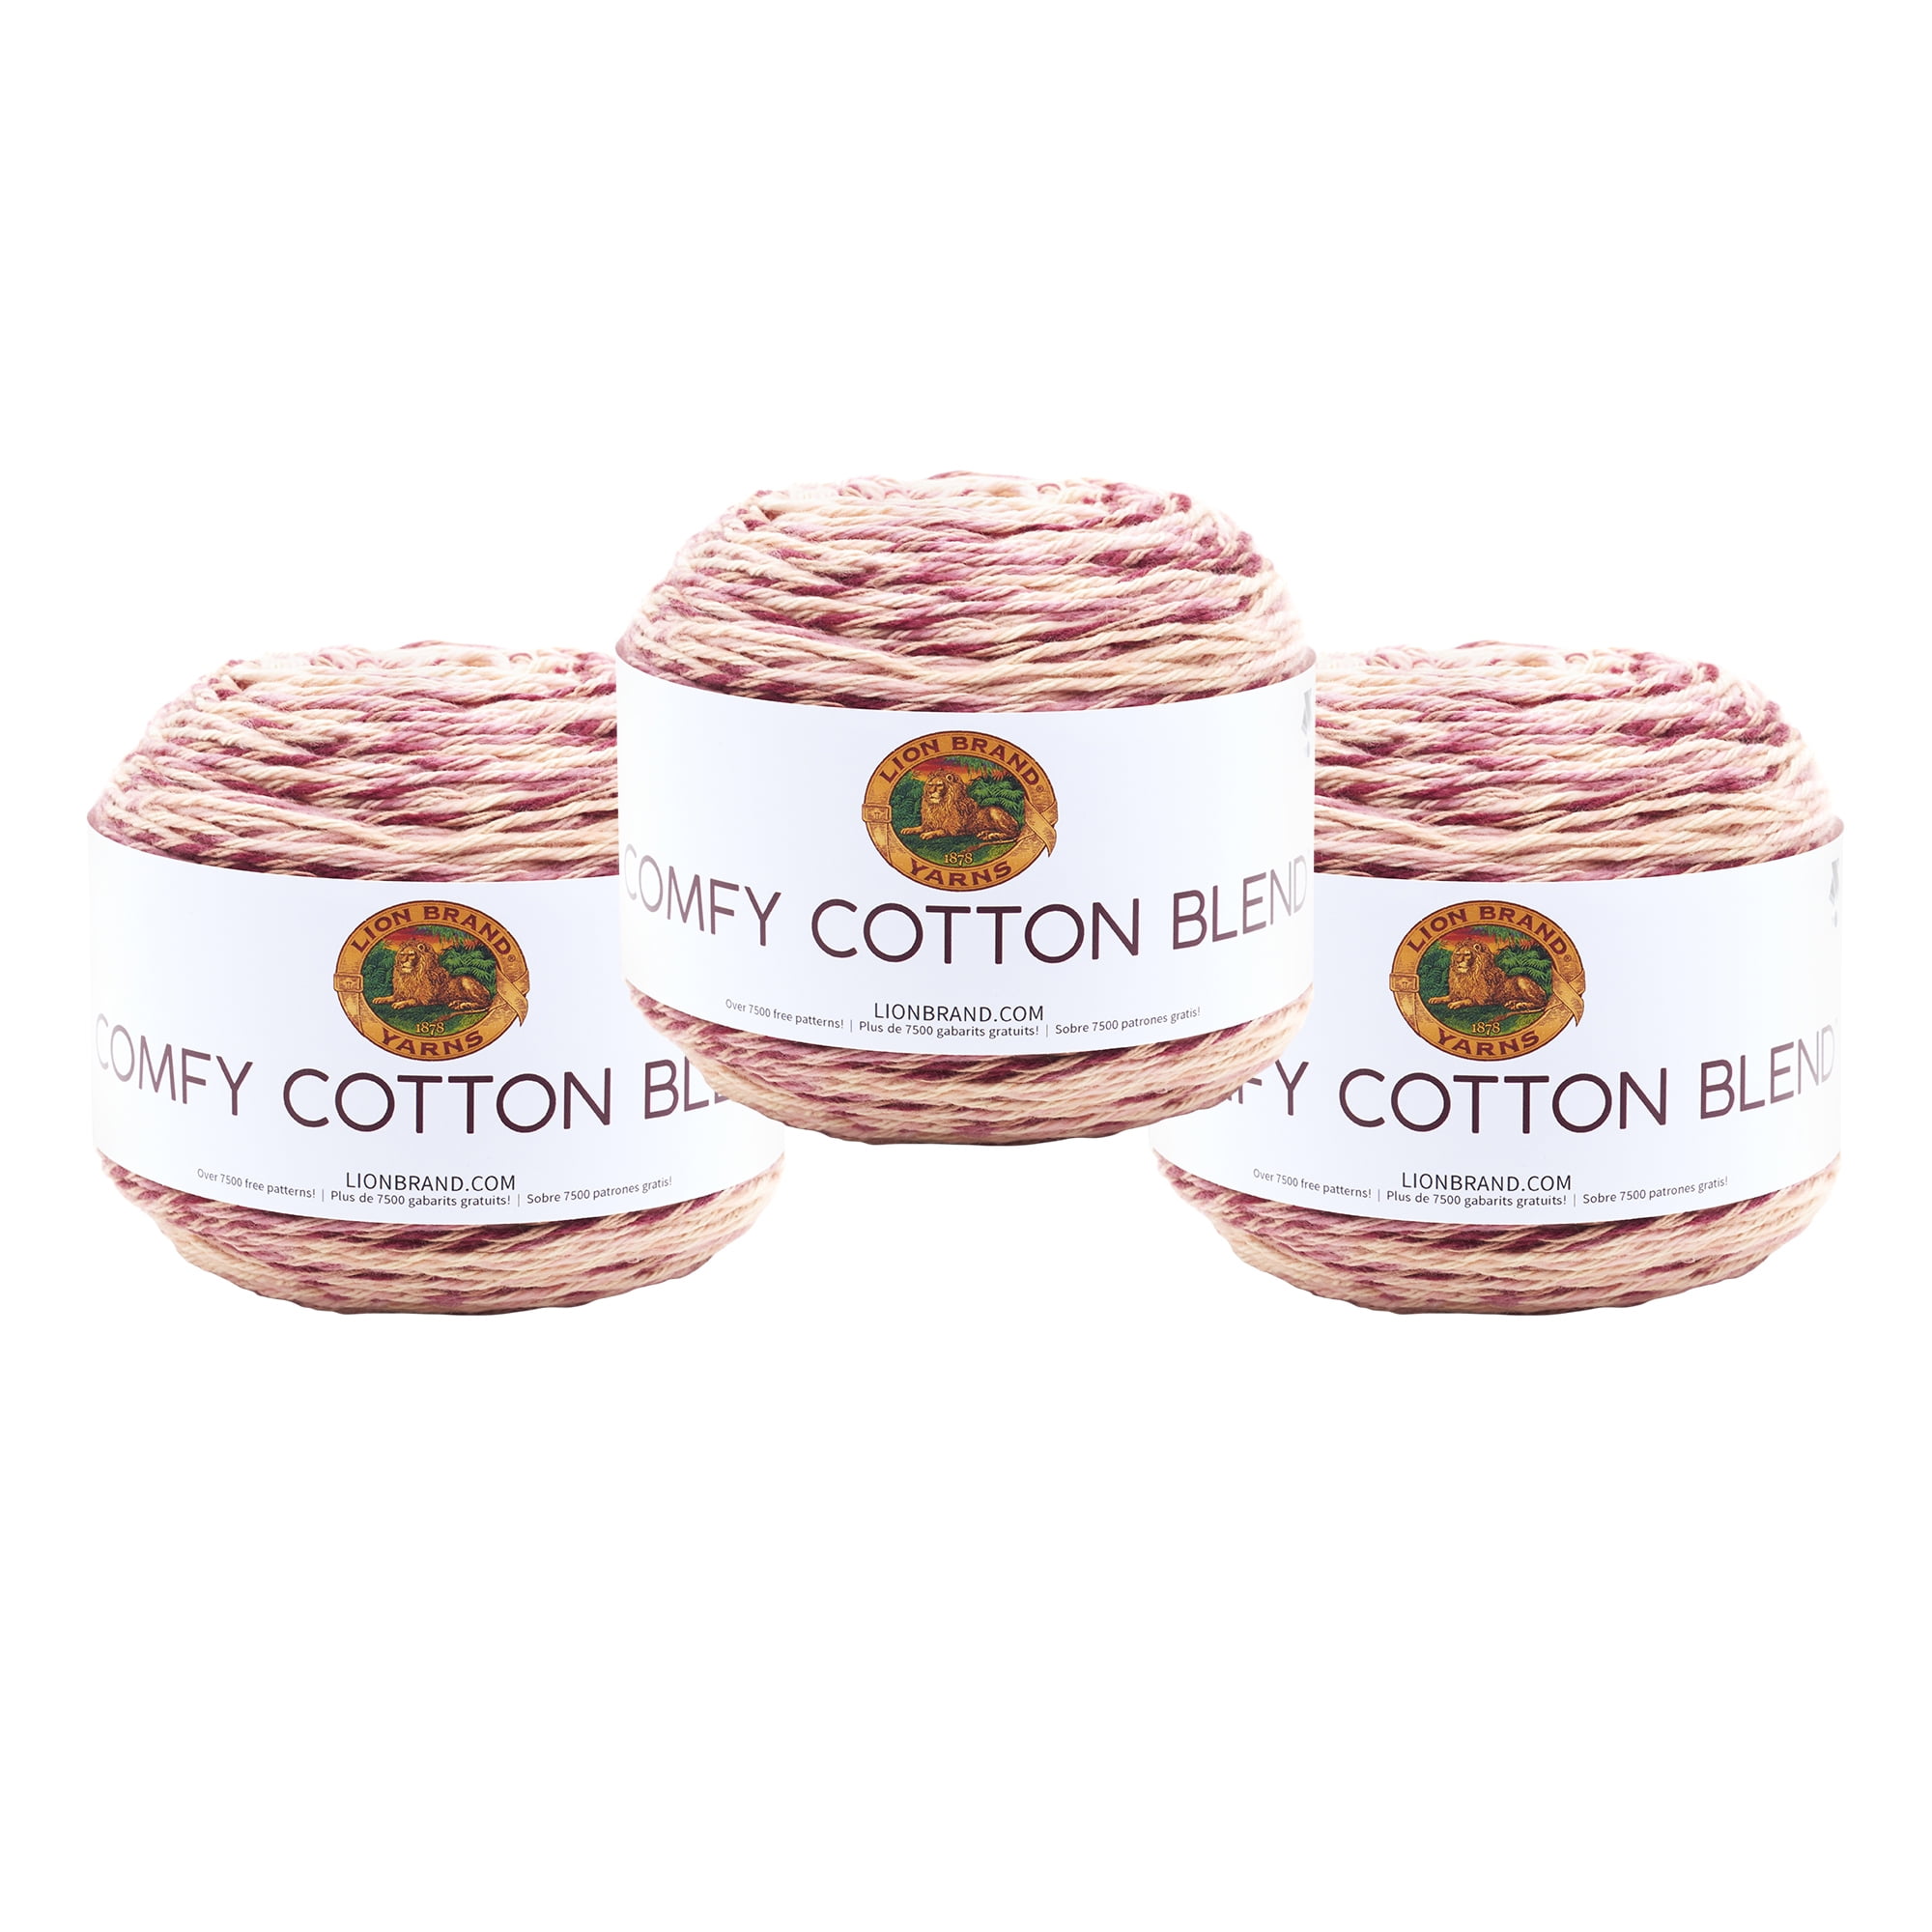 Lovie Dovie Lion Brand Yarn 756-720 Comfy Cotton Blend Yarn 1 skein/ball